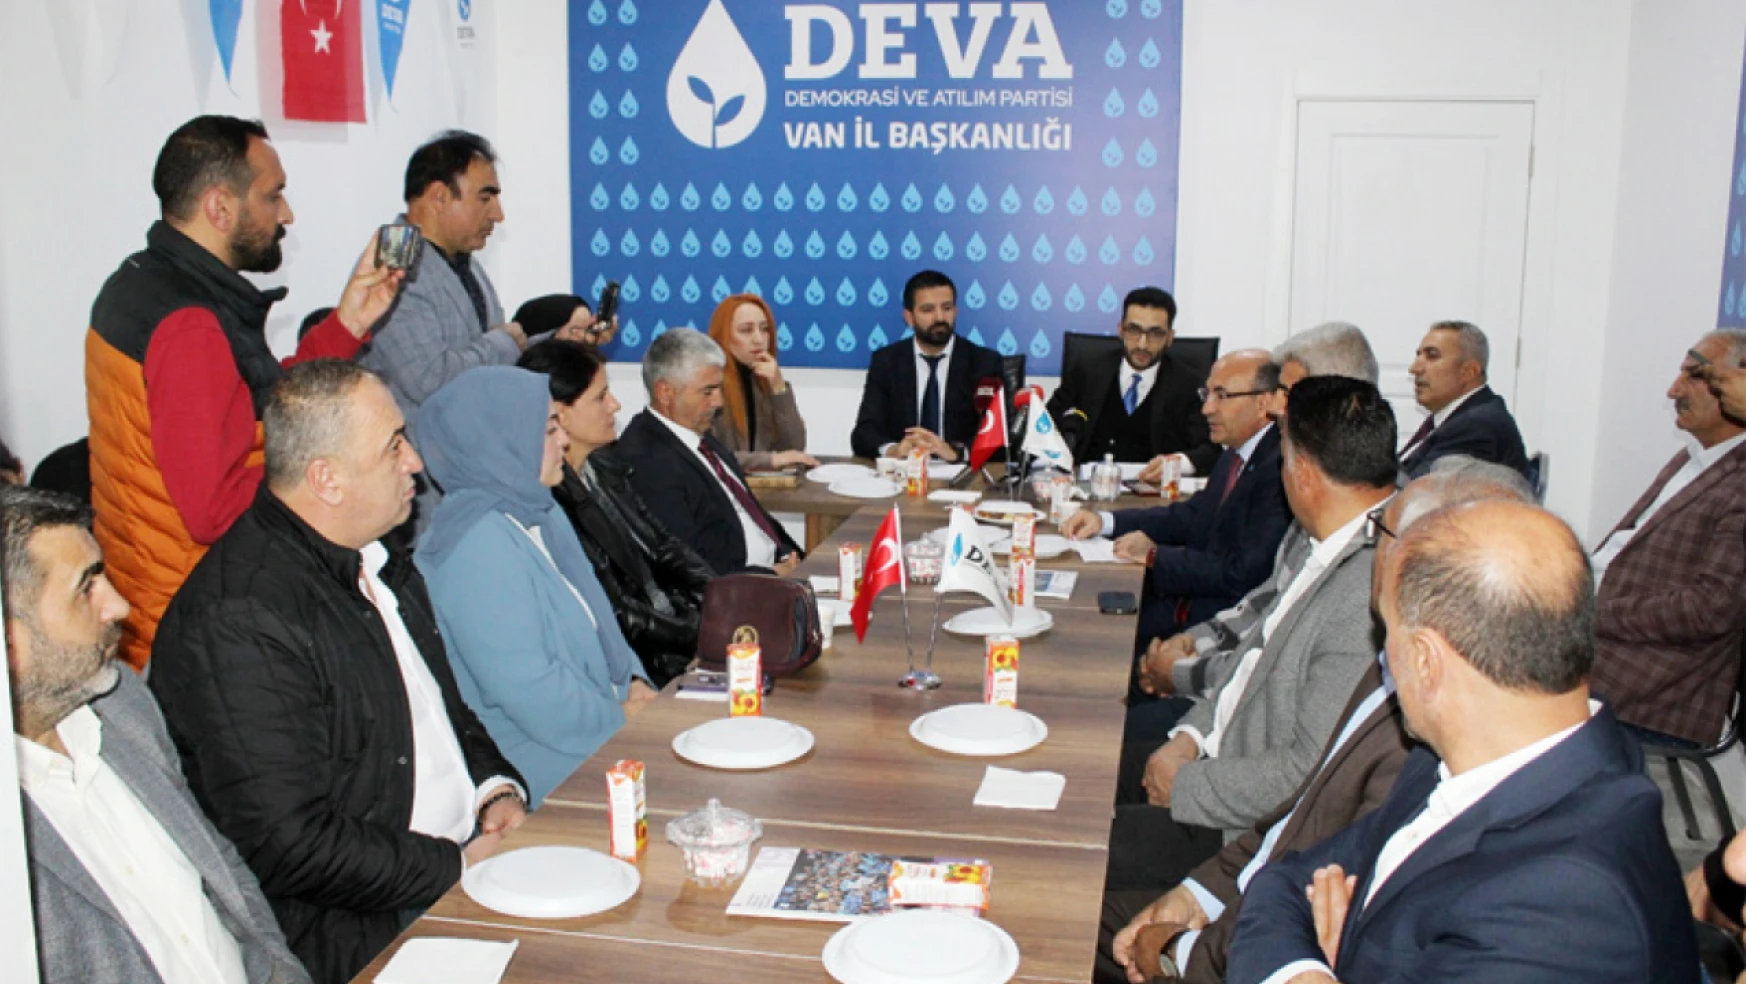 DEVA Partisi Van İl Başkanı Erkan İrven: Halkımızdan yetki istiyoruz